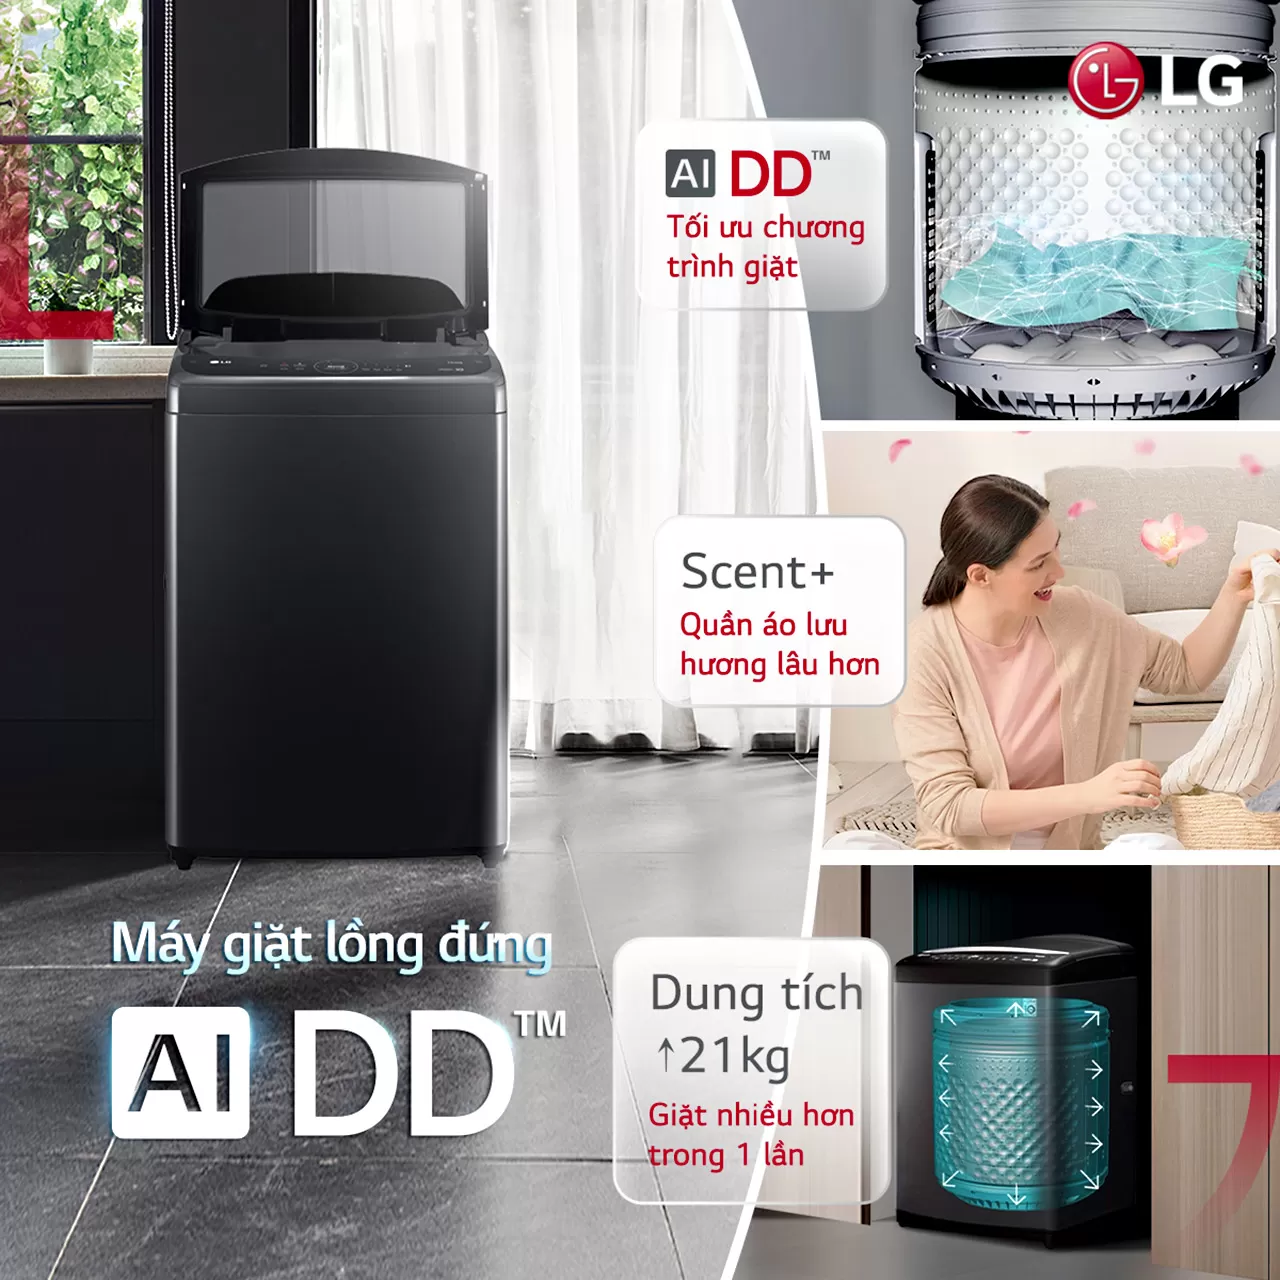 Máy giặt LG AI DD™ 